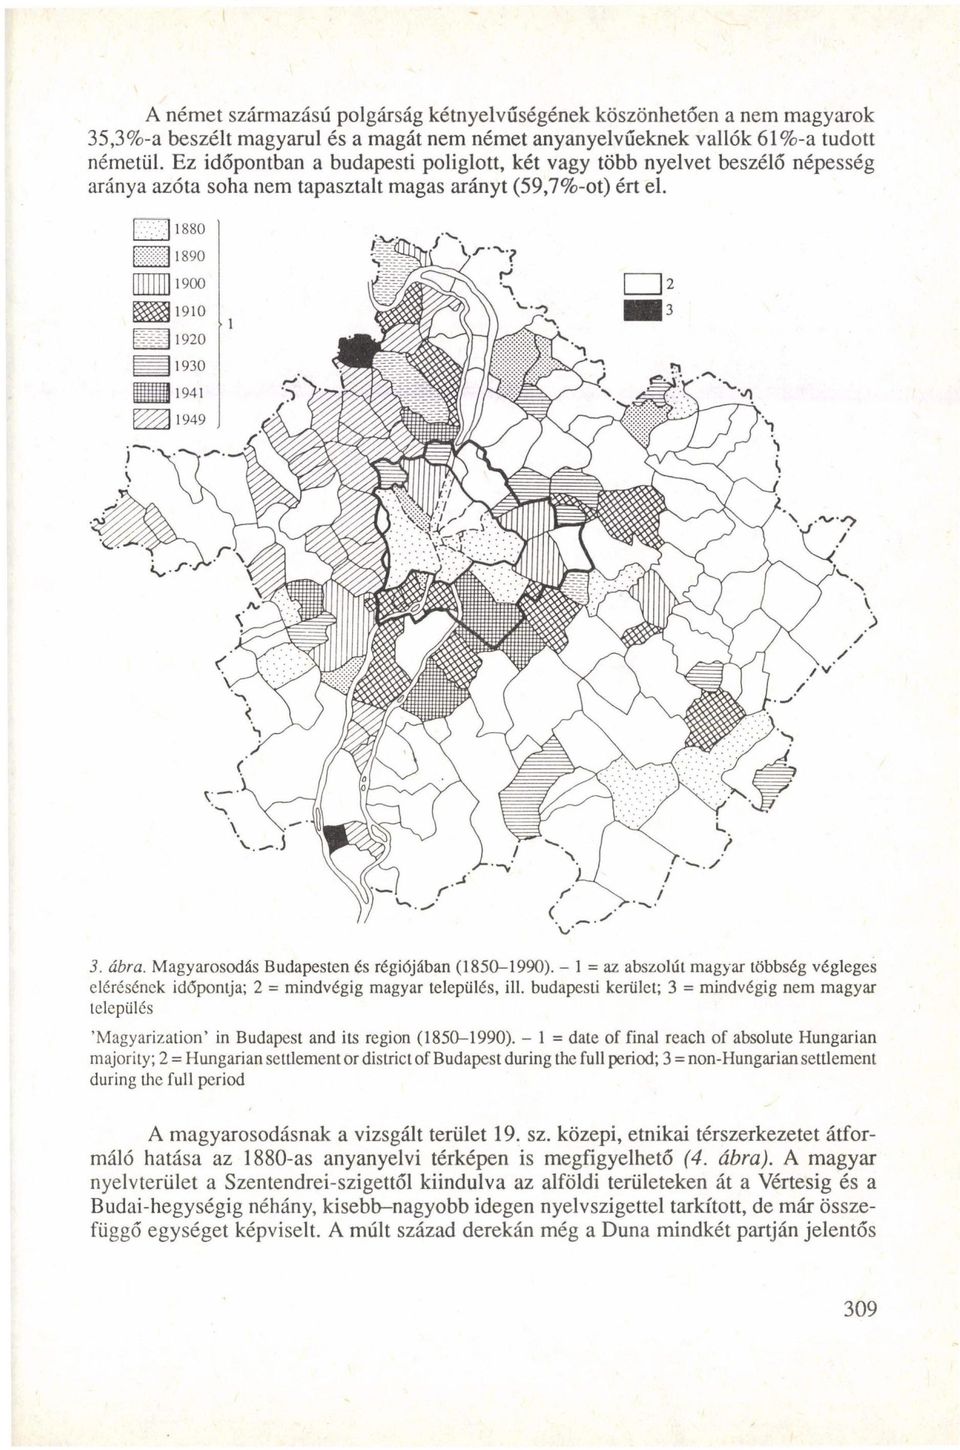 - 1 = az abszolút magyar többség végleges elérésének időpontja; 2 = mindvégig magyar település, ill.